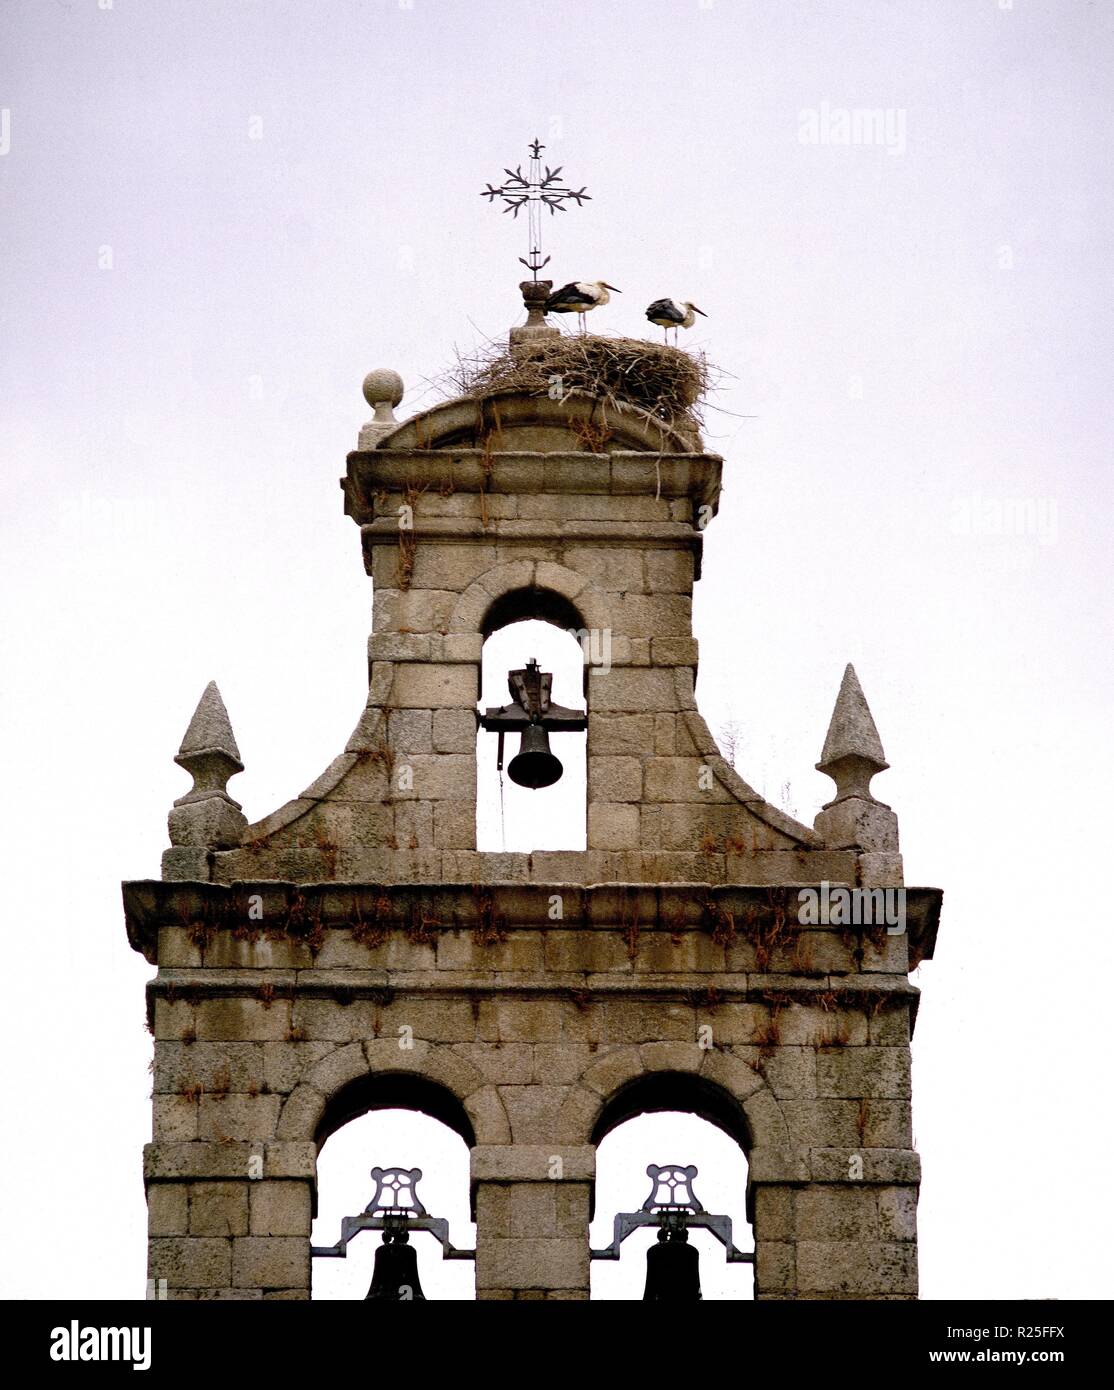 Monasterio de san miguel de las duenas hi-res stock photography and images  - Alamy